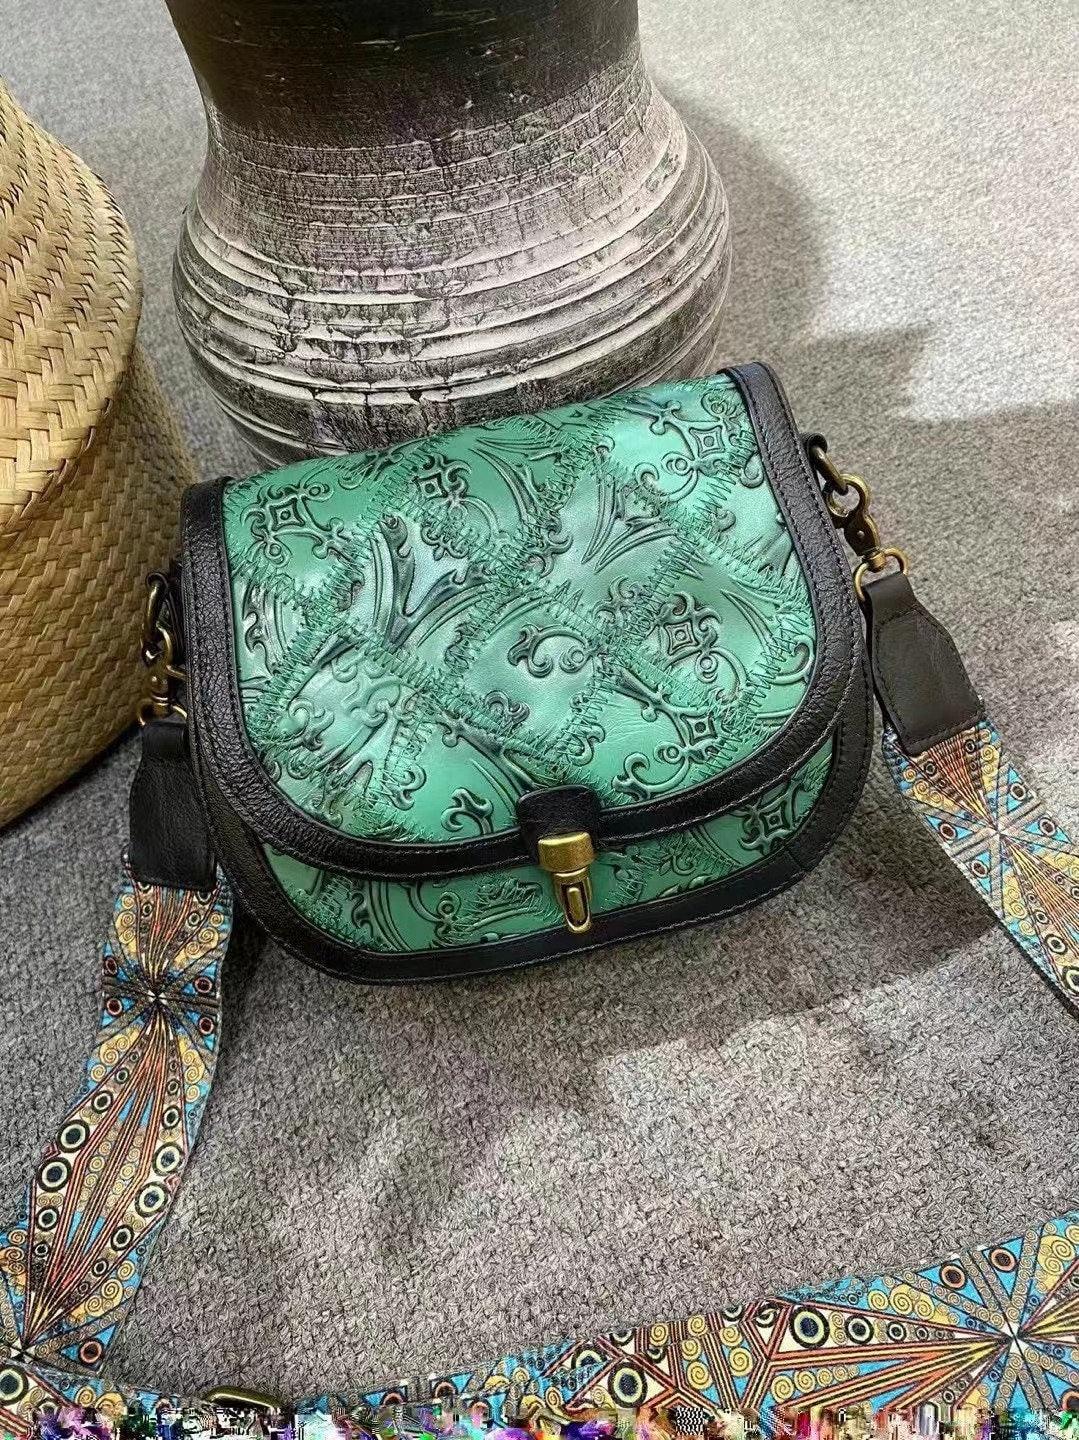 Spring/Summer Cowhide Embossed Fashion Saddle Bag with Wide Strap, Vintage Ethnic Style Leather Shoulder Bag, Crossbody Bag, Black, Green